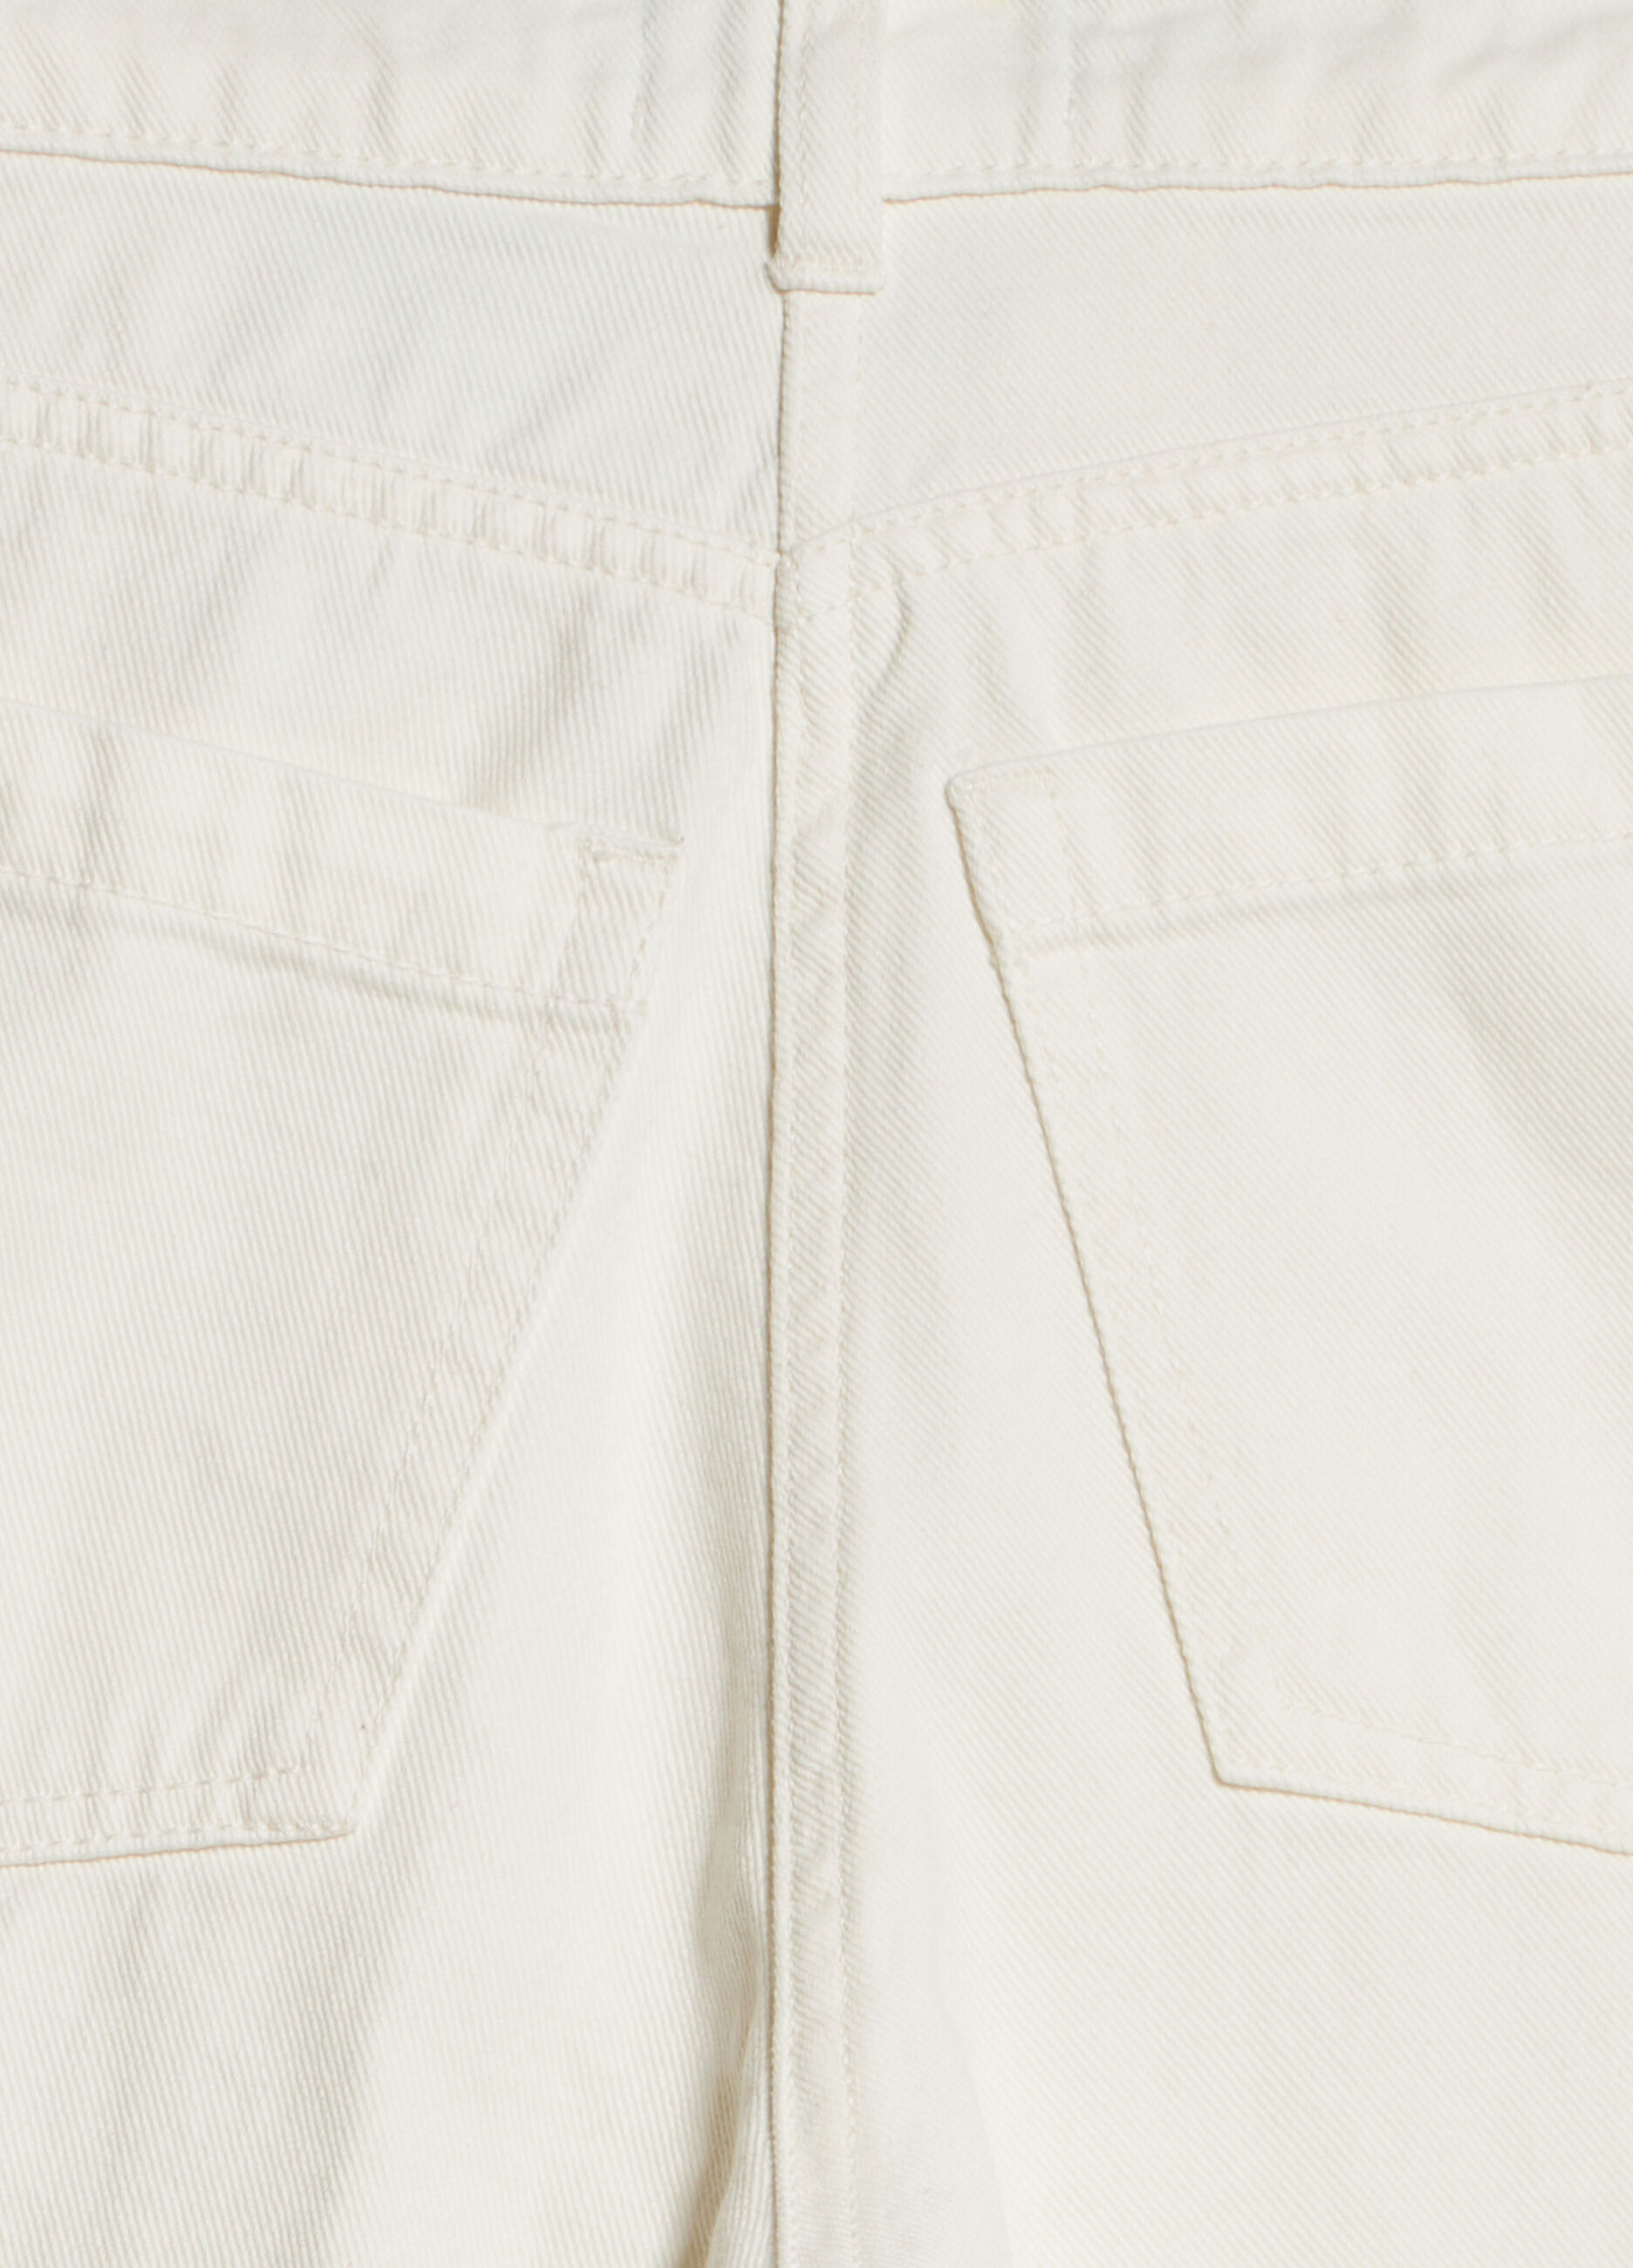 Cotton denim culotte style pants